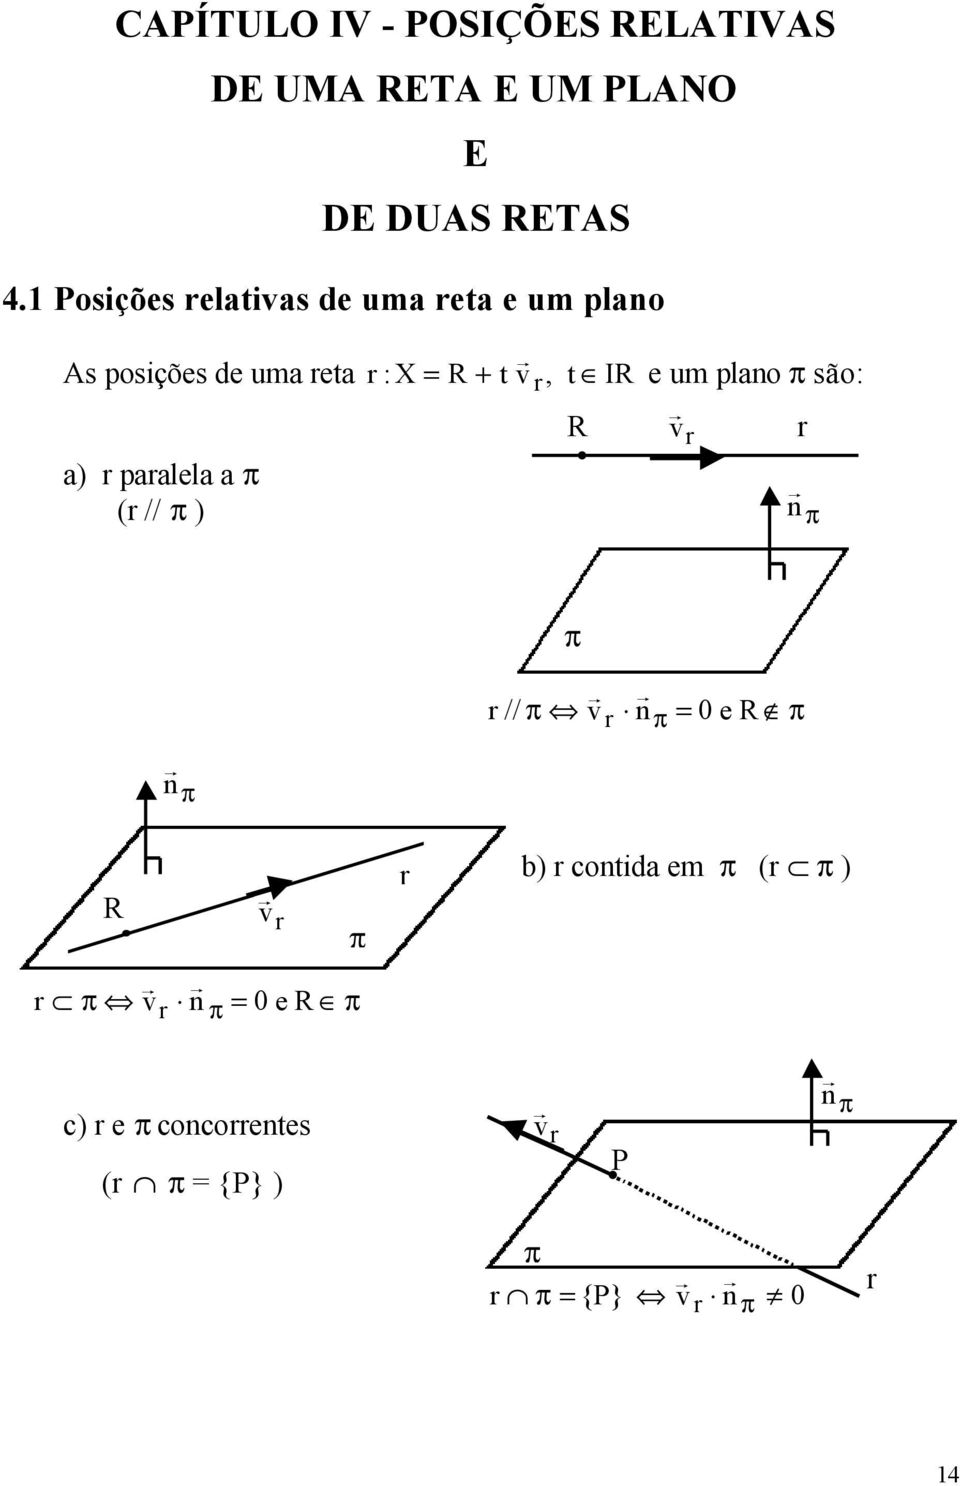 paalela a ( // ) :X = R + t v, t IR R e um plan sã: v n // v n = 0 e